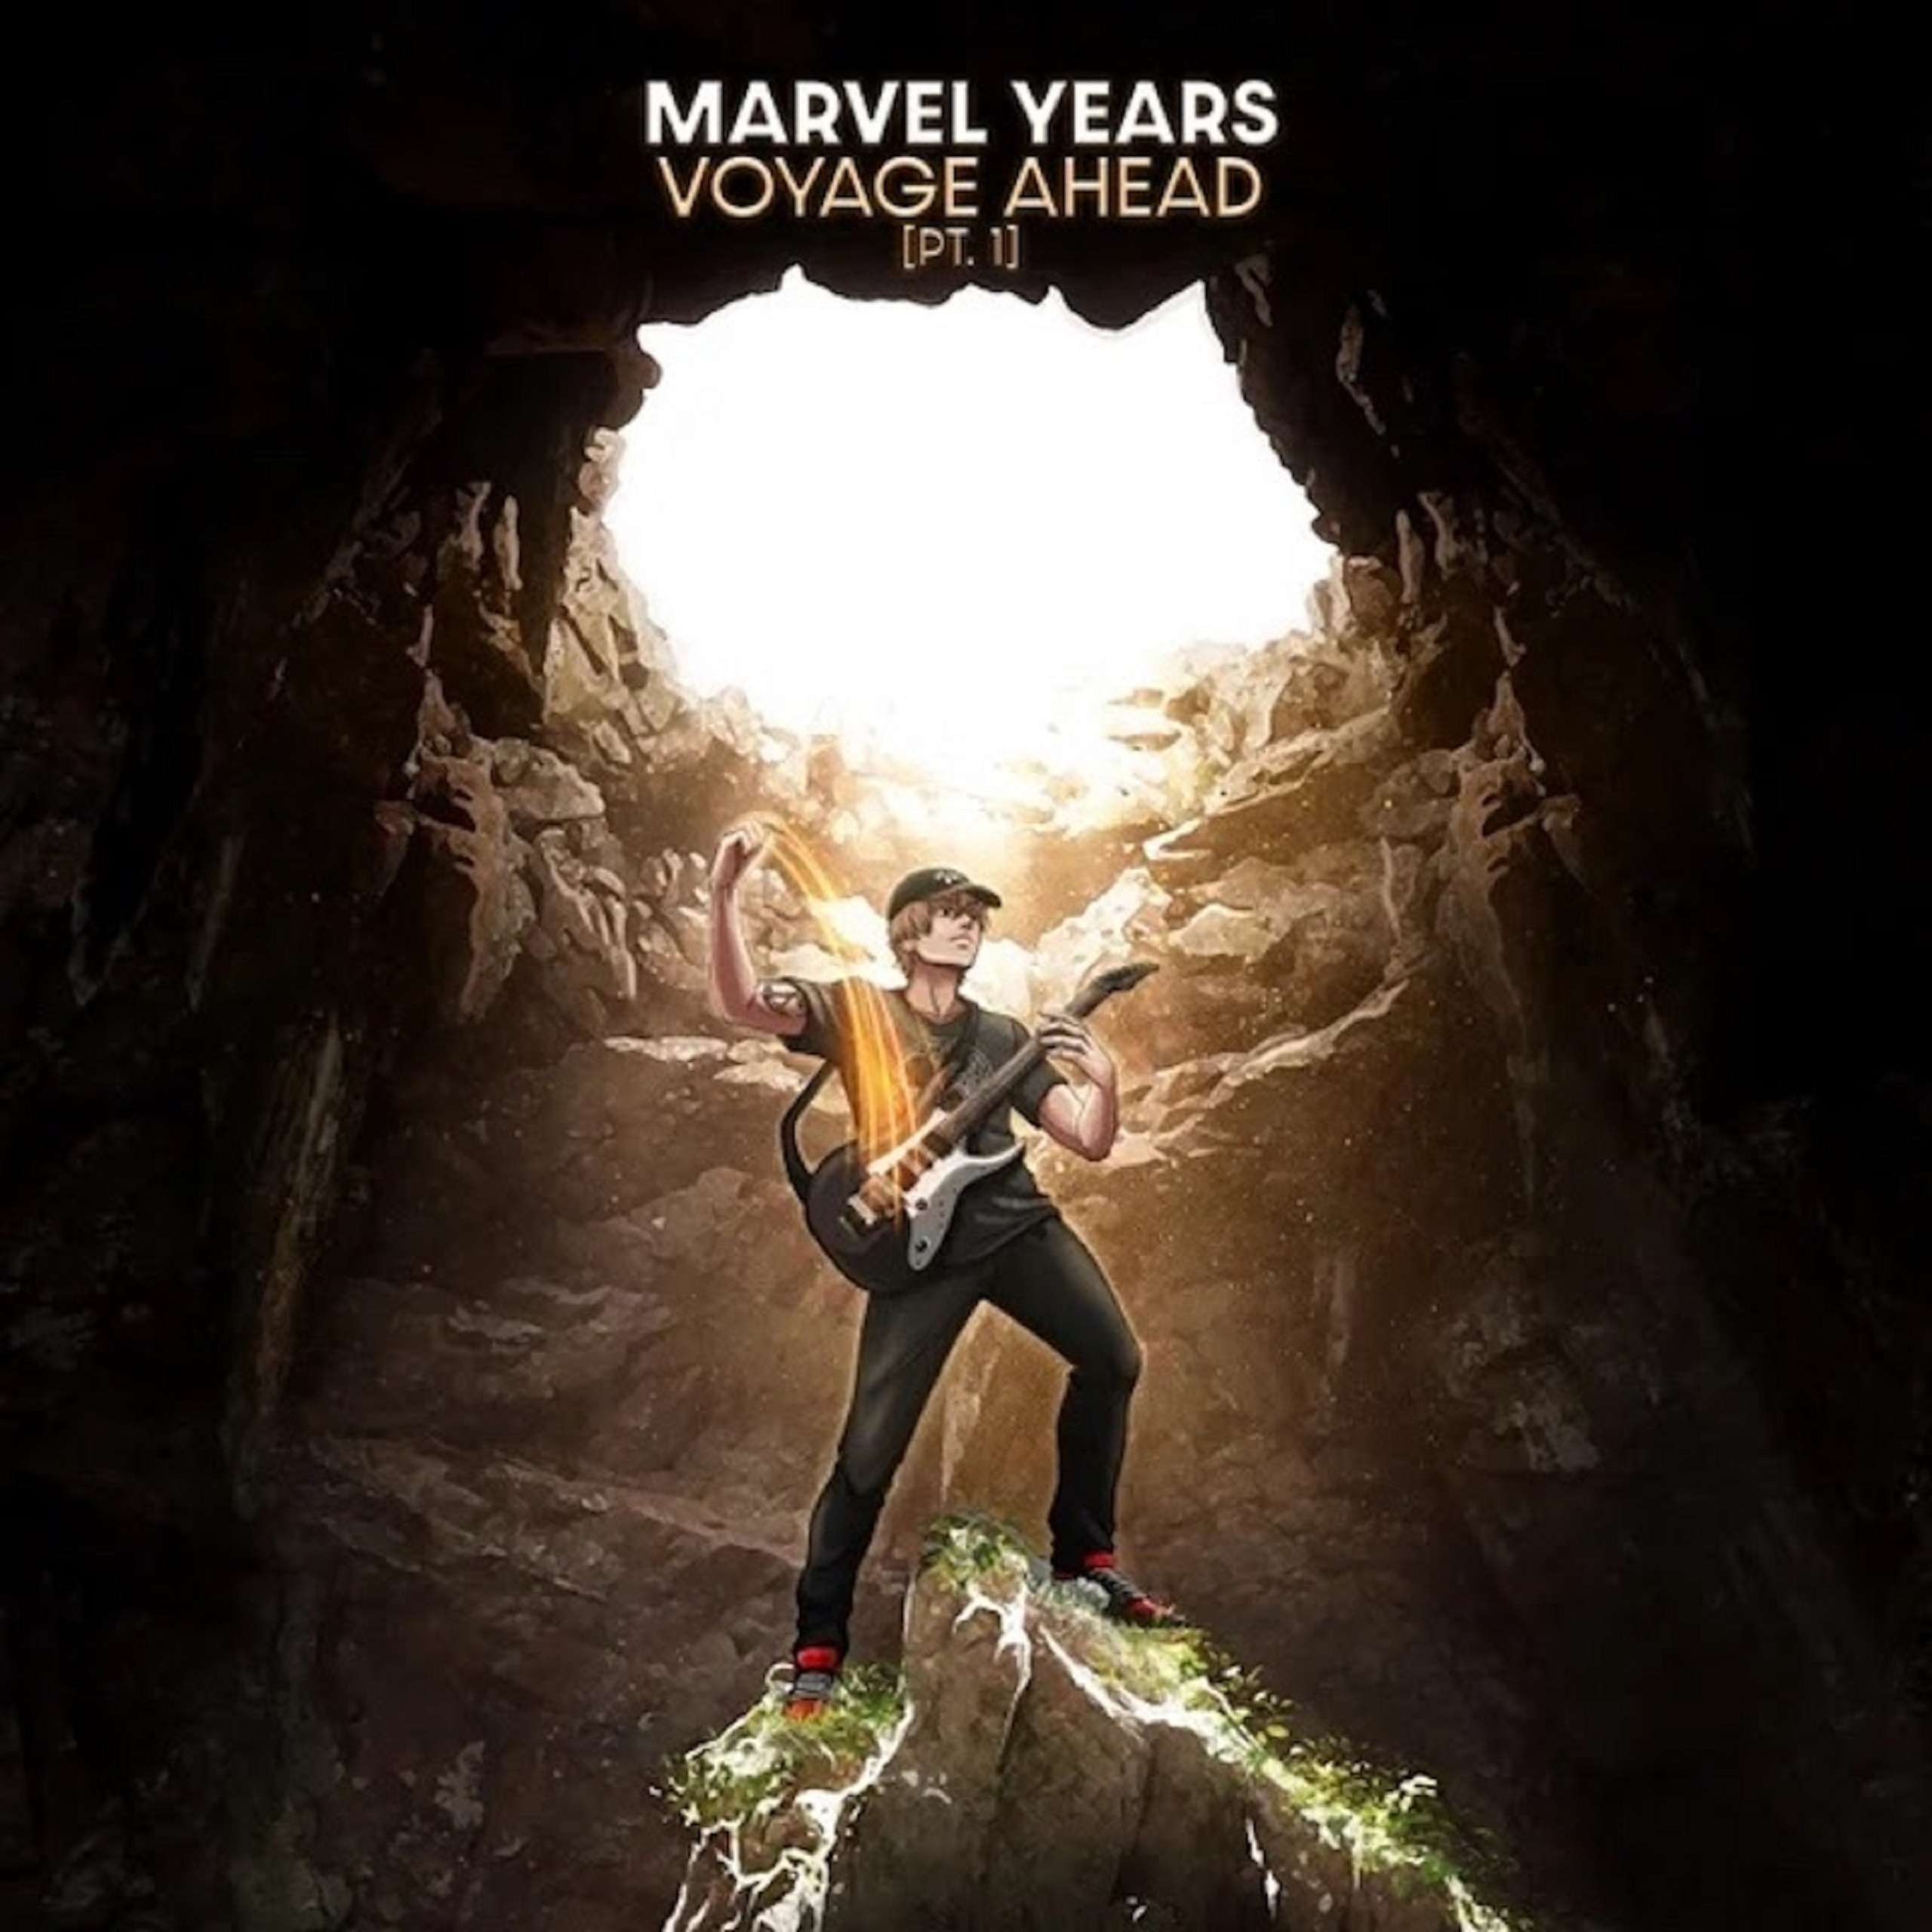 Multi-instrumentalist Marvel Years drops genre-bending Voyage Ahead Pt. 1 EP